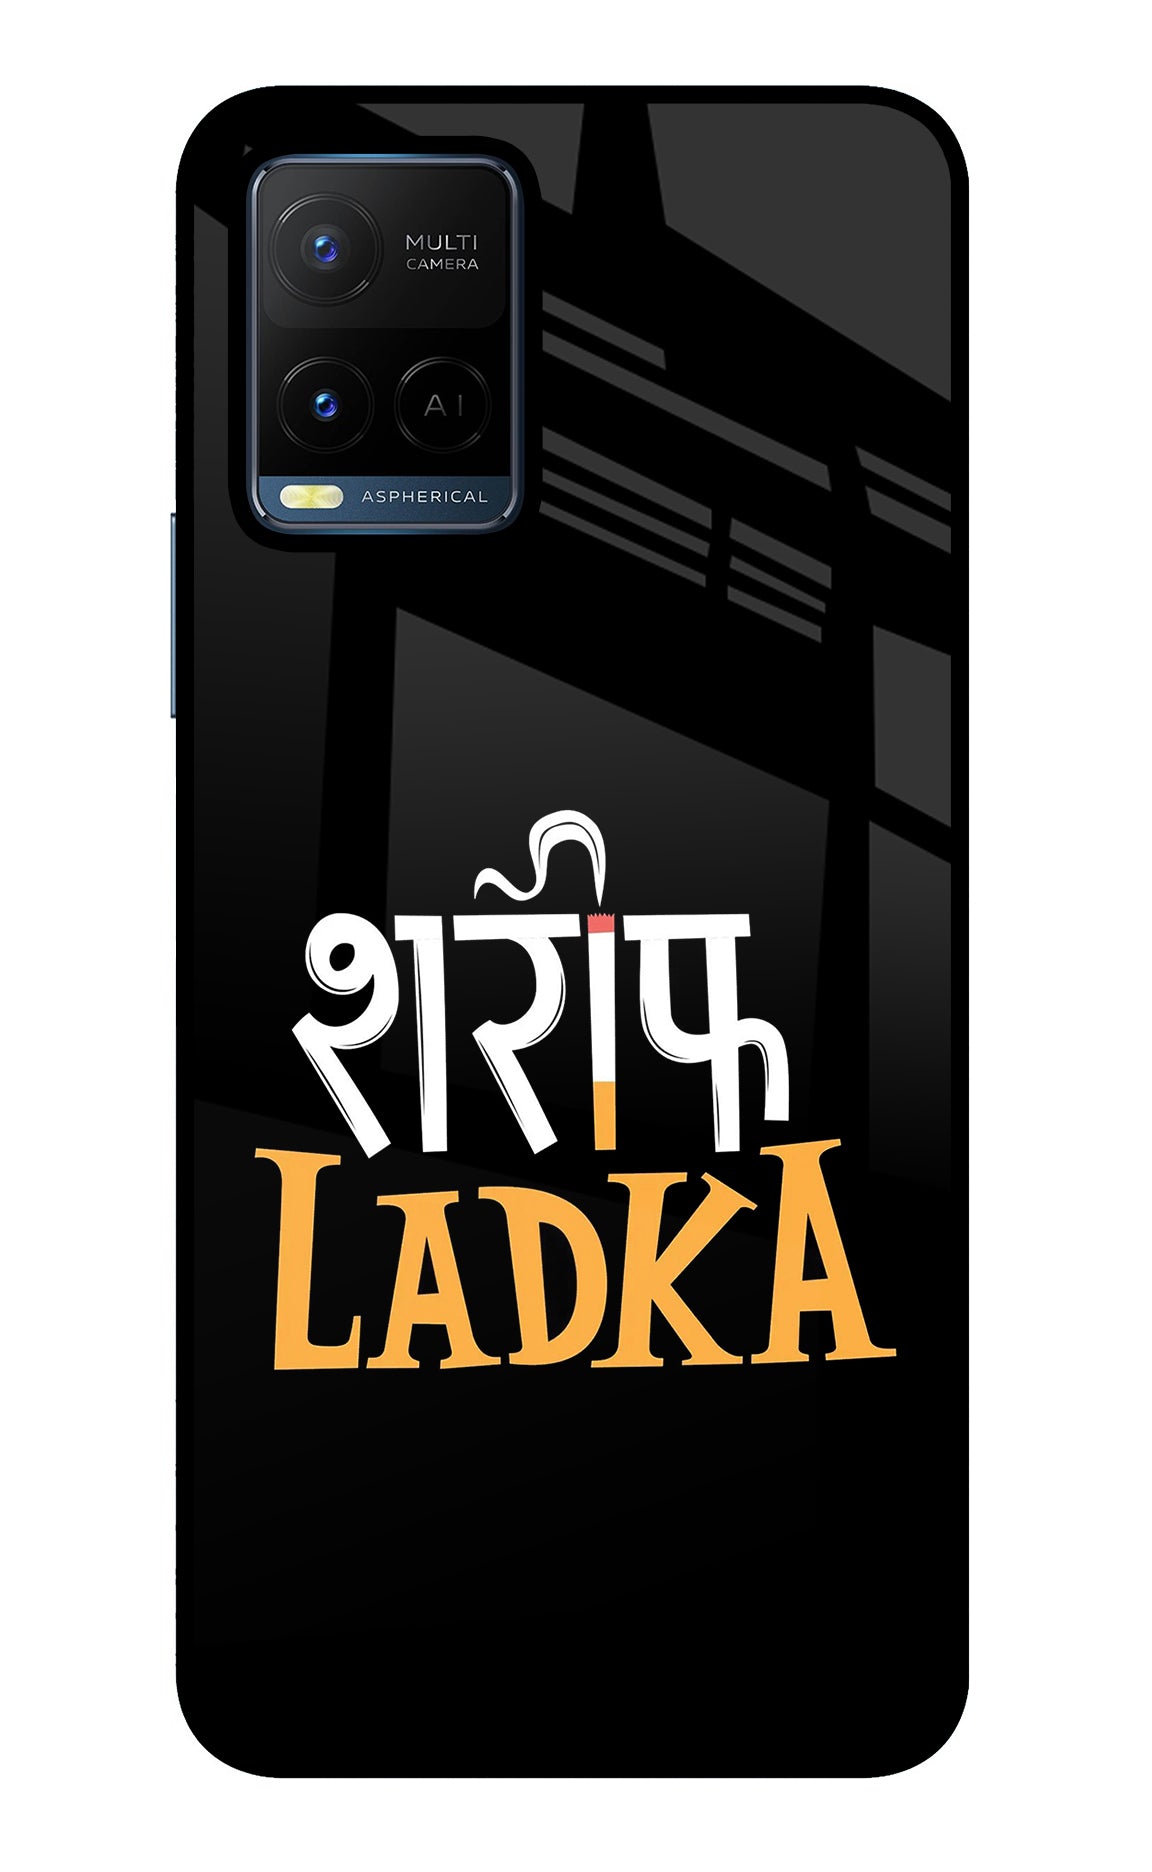 Shareef Ladka Vivo Y21/Y21s/Y33s Back Cover